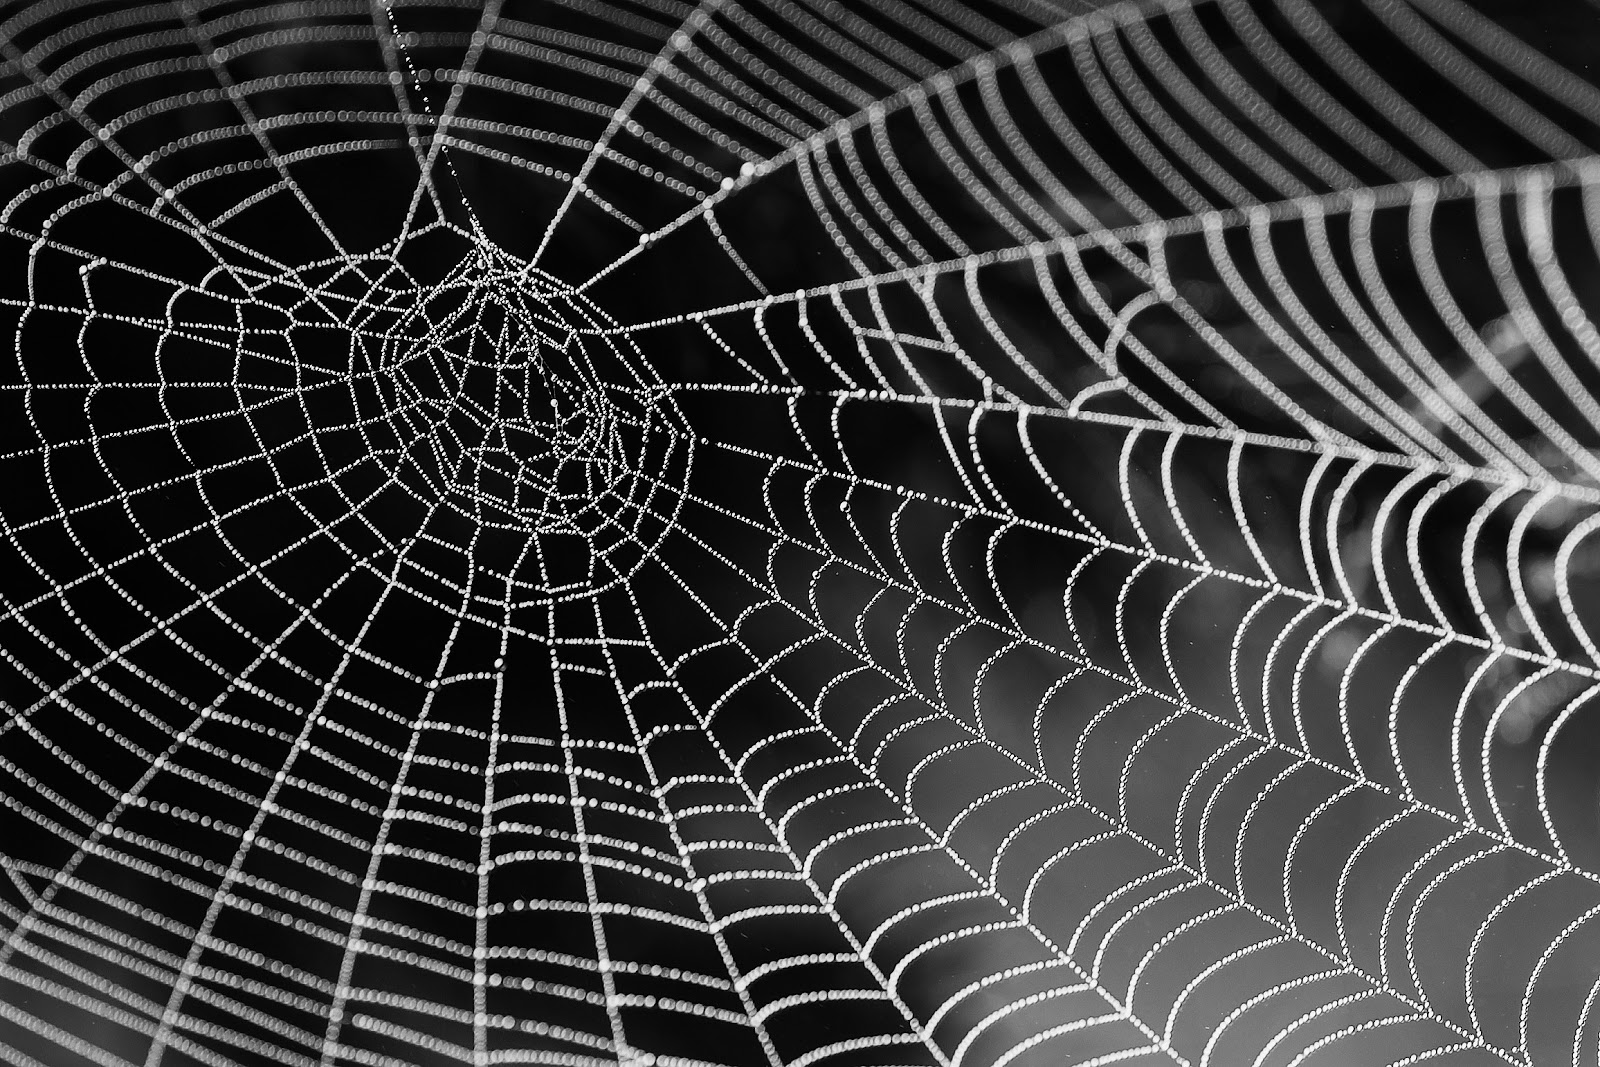 A spiderweb 